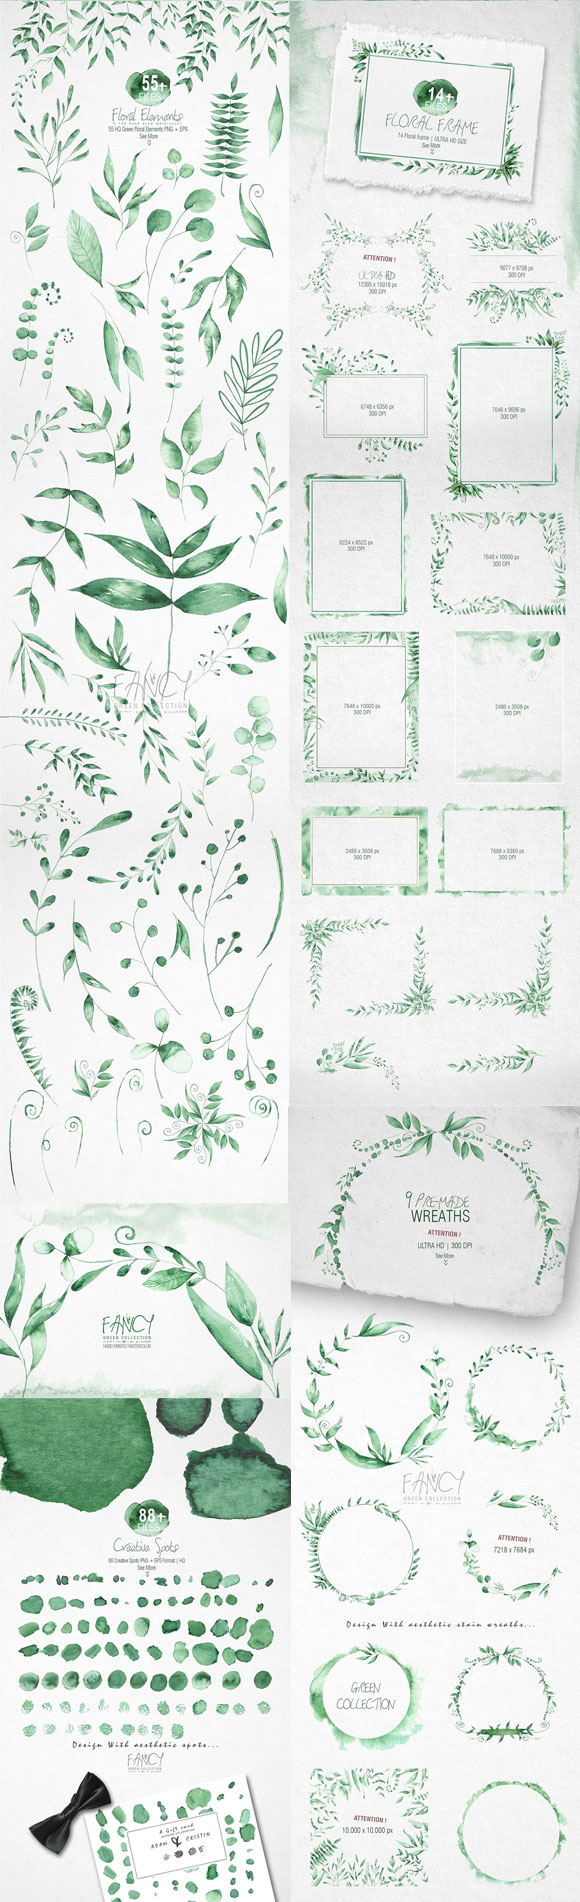 水彩手绘绿色植物叶子框架笔触图案素材下载2